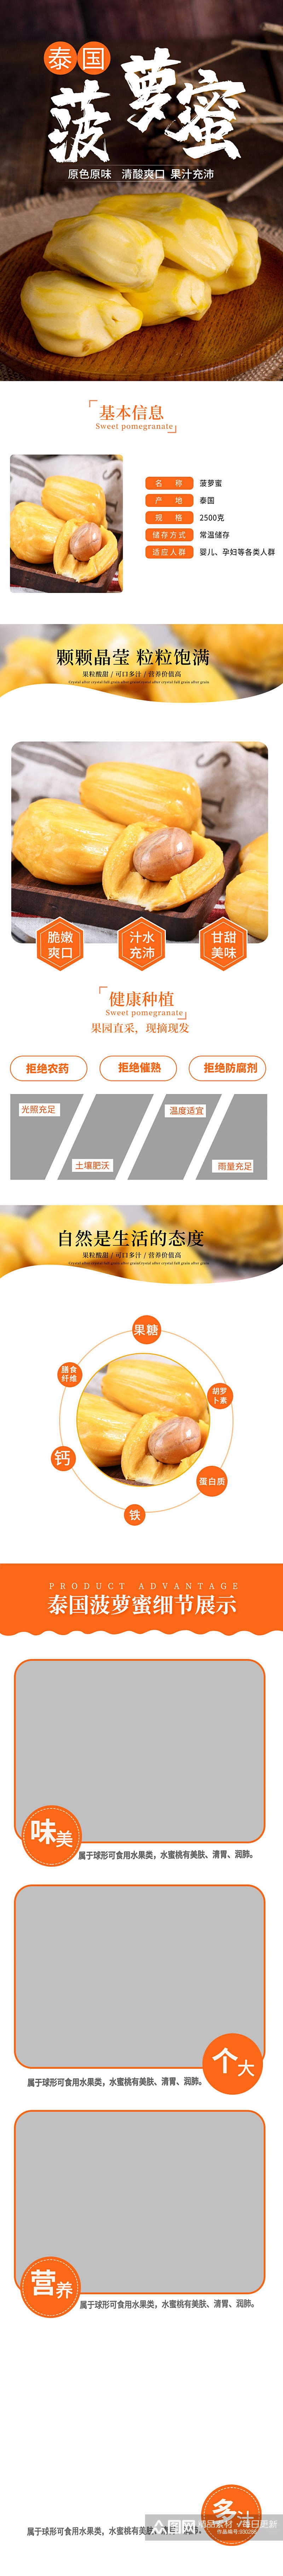 泰国菠萝蜜新鲜水果详情页素材